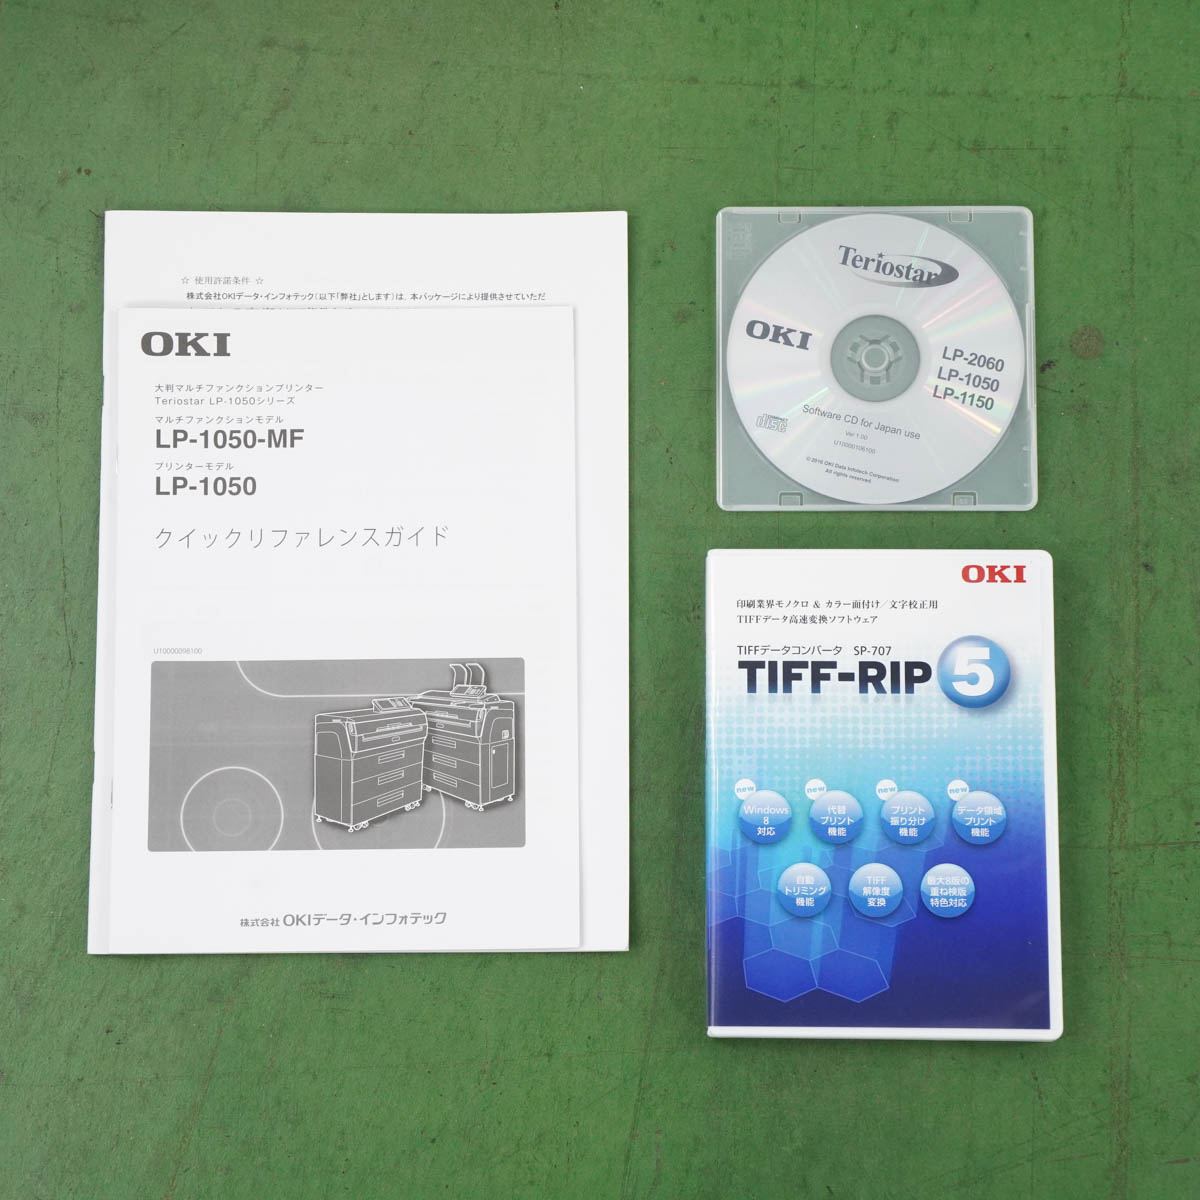 [PG]USED  カウンター444309 OKI LP-1050-AP 広幅LED複合機・プリンター Teriostar A0 ソフトウェア [04991-0066] - 4